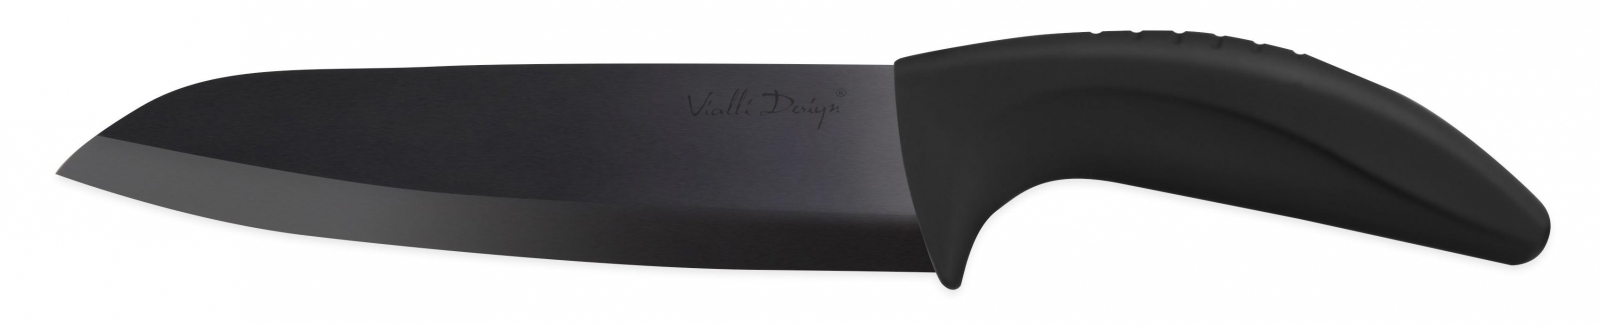 Nóż ceramiczny szefa kuchni 16 cm B160A Vialli Design